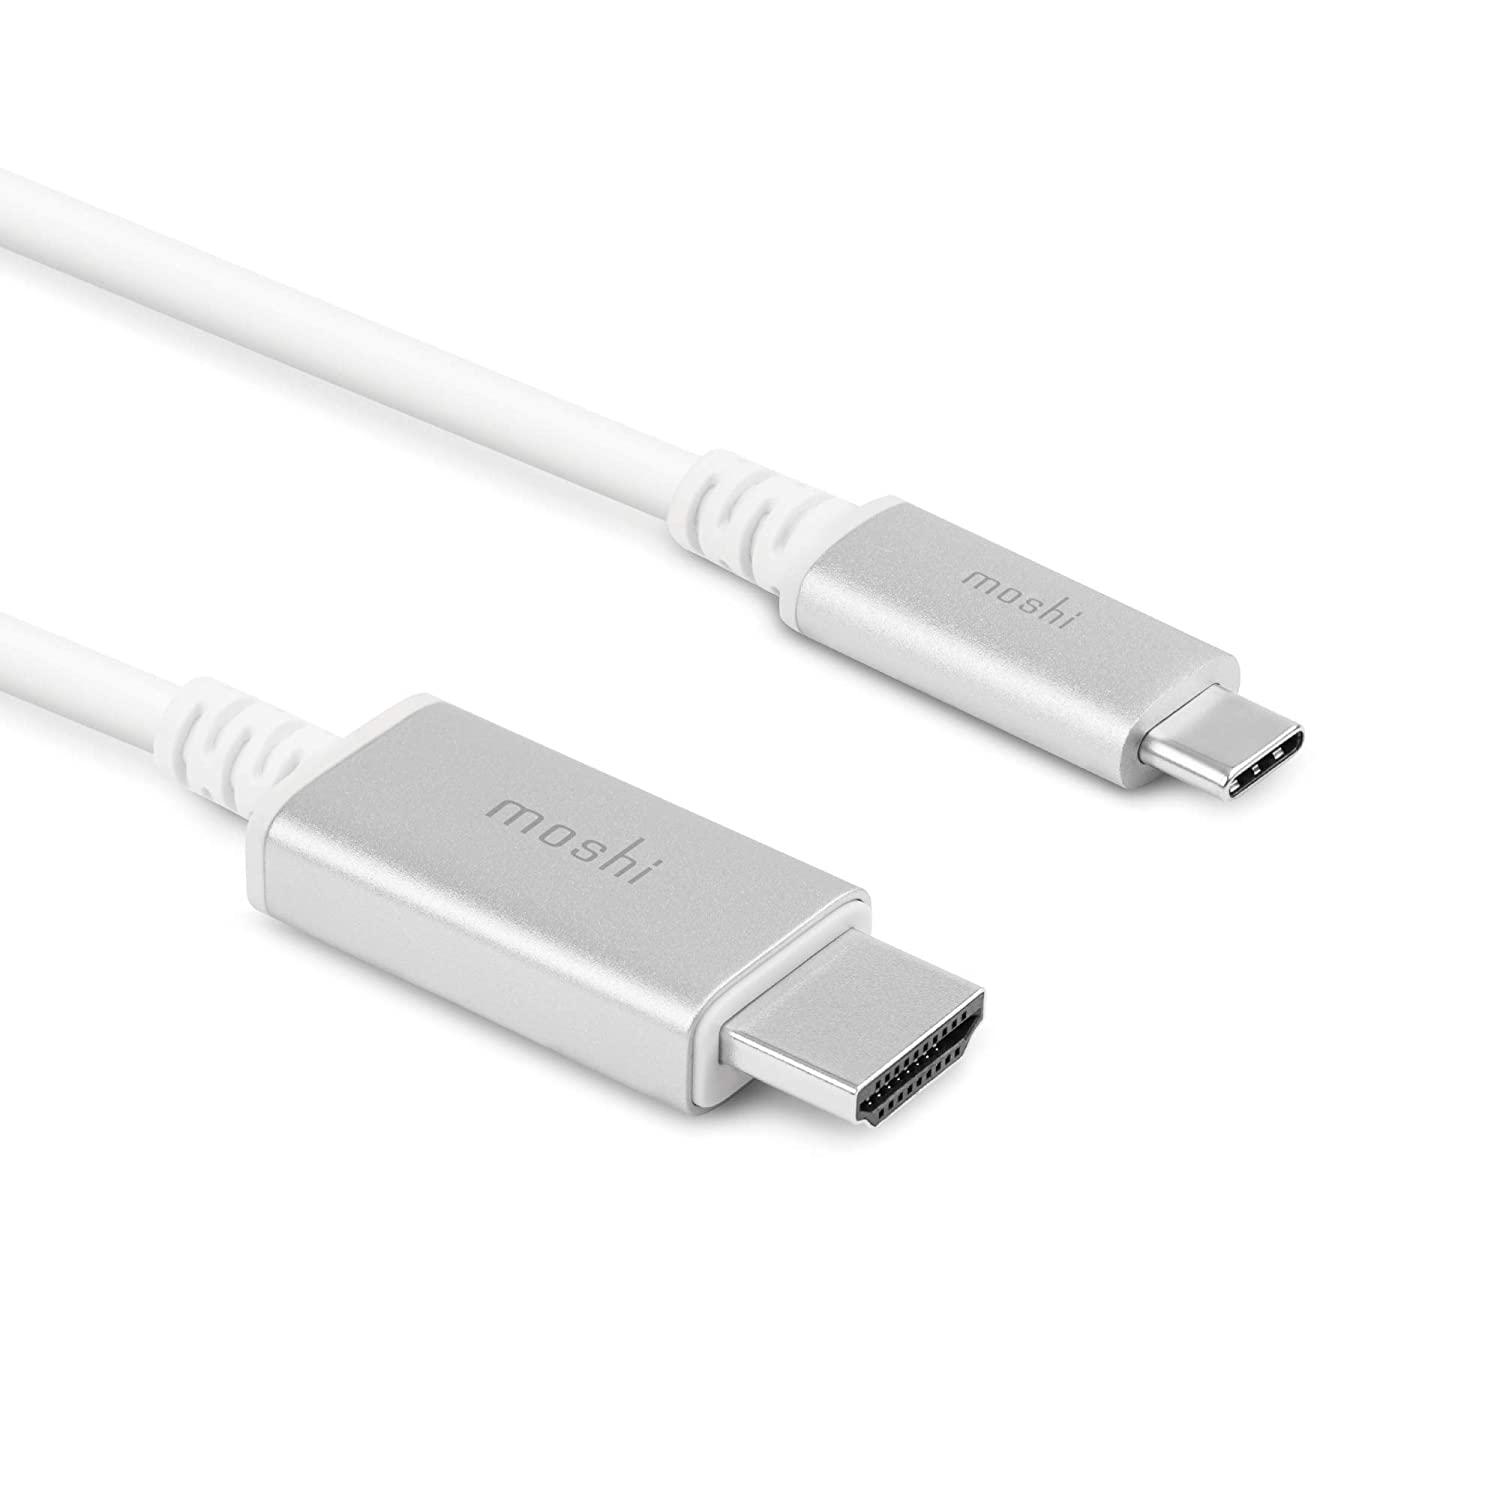 وصلة تلفزيون للجوال 2 متر بدقة 4 أبيض موشي Moshi USB Type C to HDMI 2M 4K Adapter Cable - cG9zdDo1NzY1Mw==